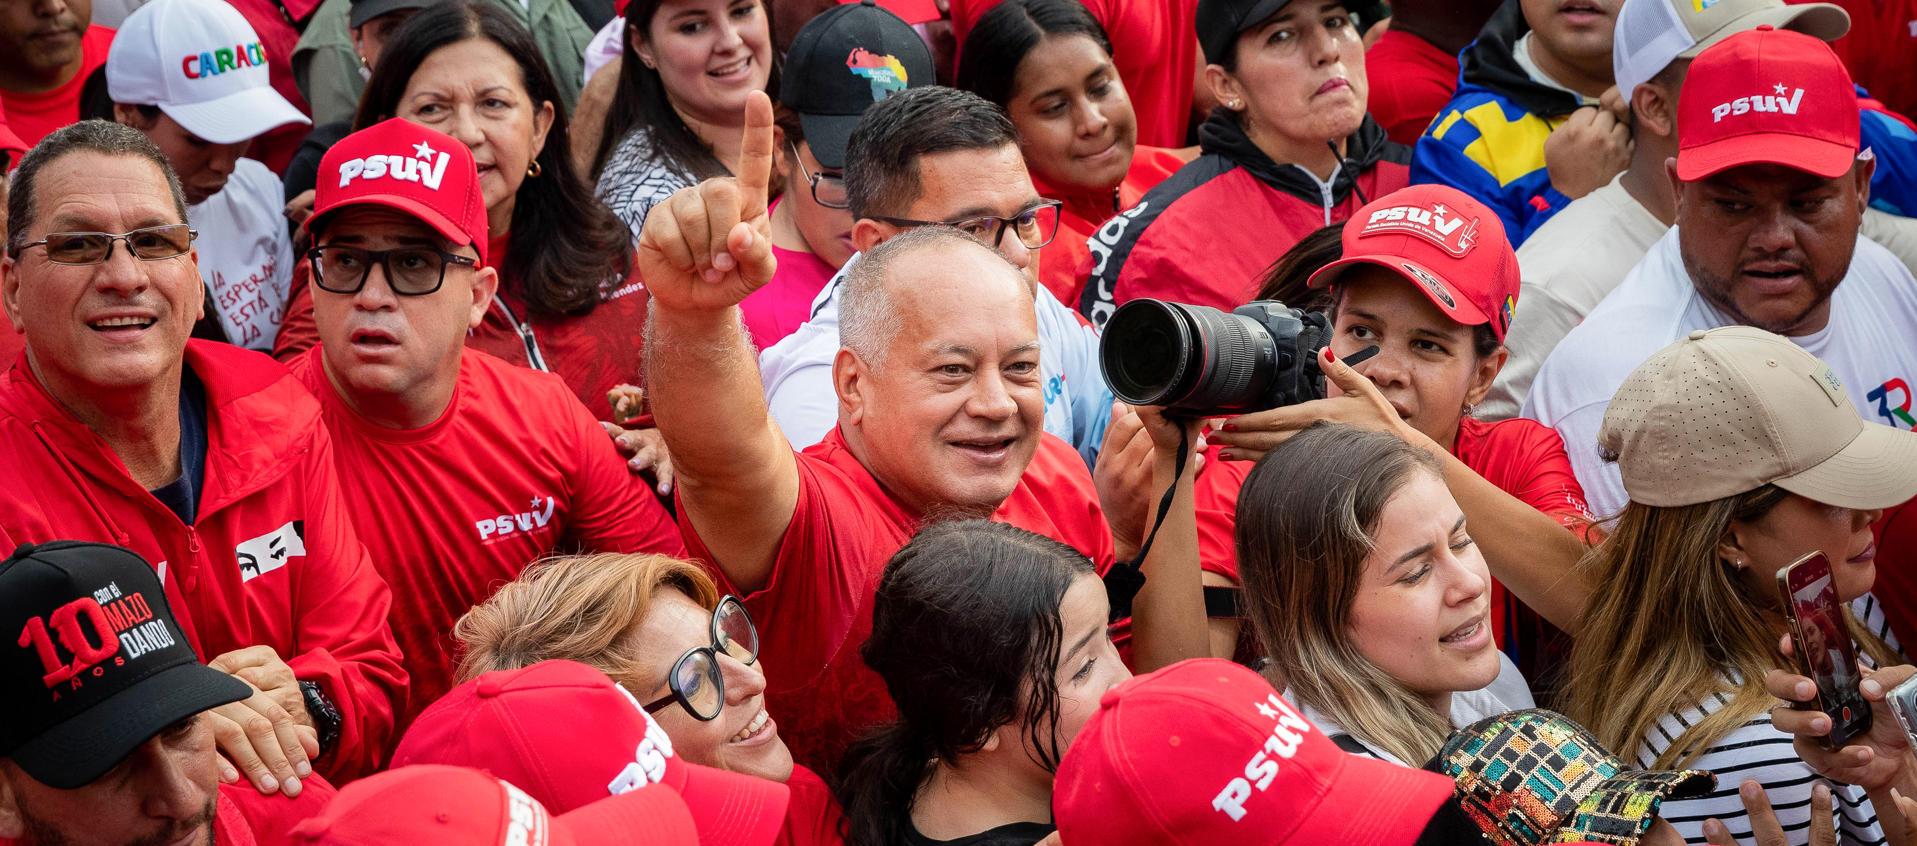 Vicepresidente del oficialista Partido Socialista Unido de Venezuela (PSUV), Diosdado Cabello.